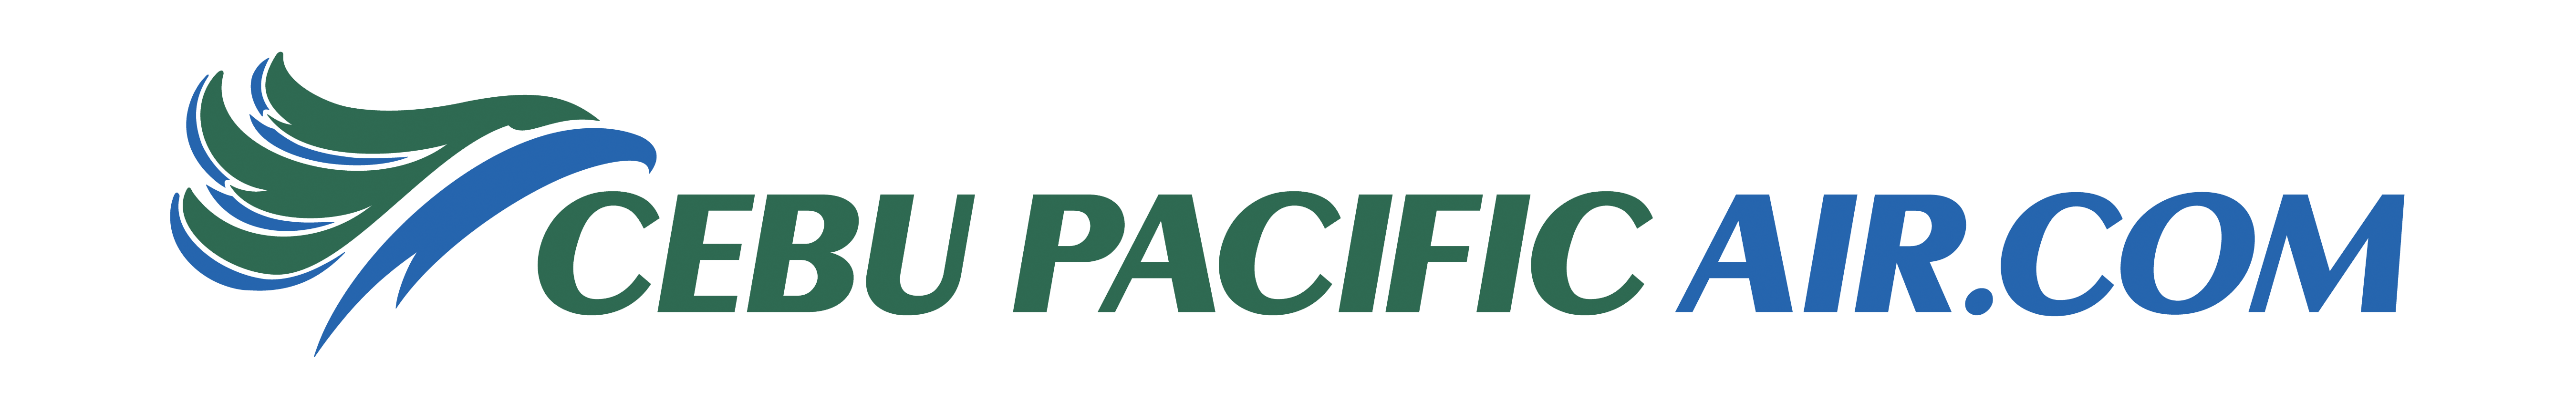 Cebu pacific aircom logo png 8 PNG Image